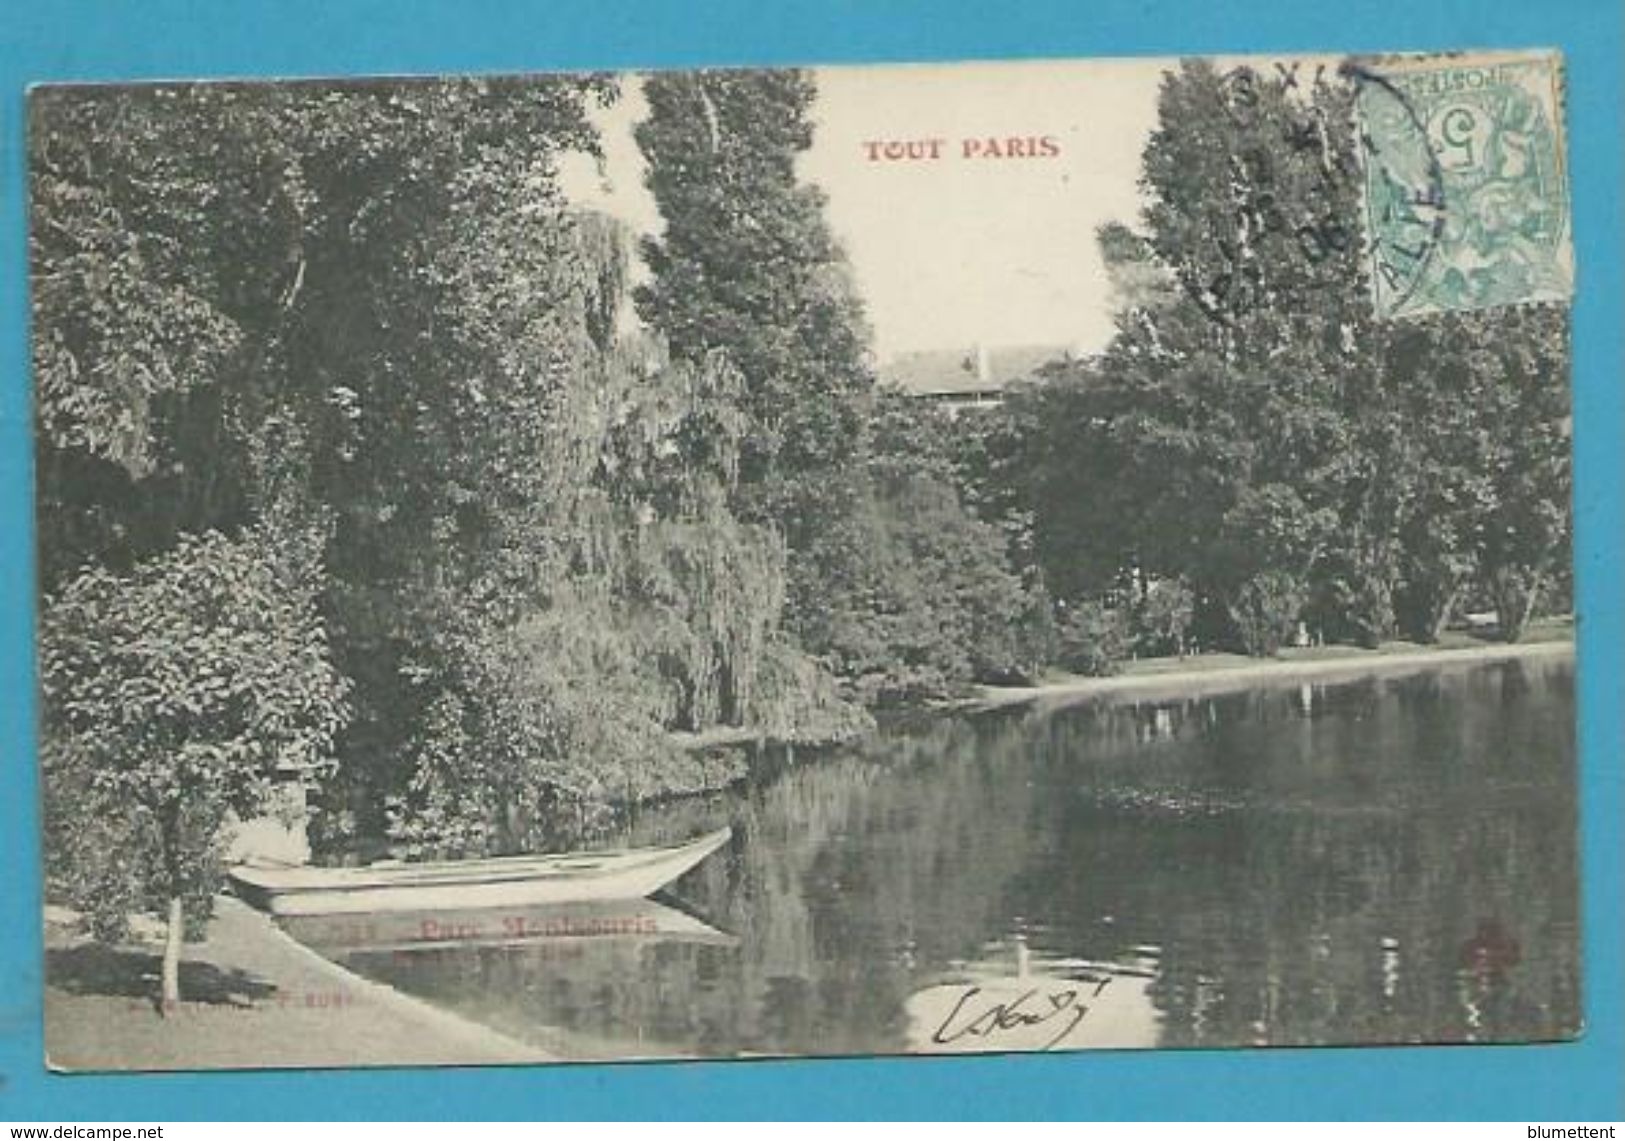 CPA TOUT PARIS 534 - Buttes Chaumont  Parc Montsouris (XIXème Arrt.) Ed. FLEURY - Arrondissement: 19